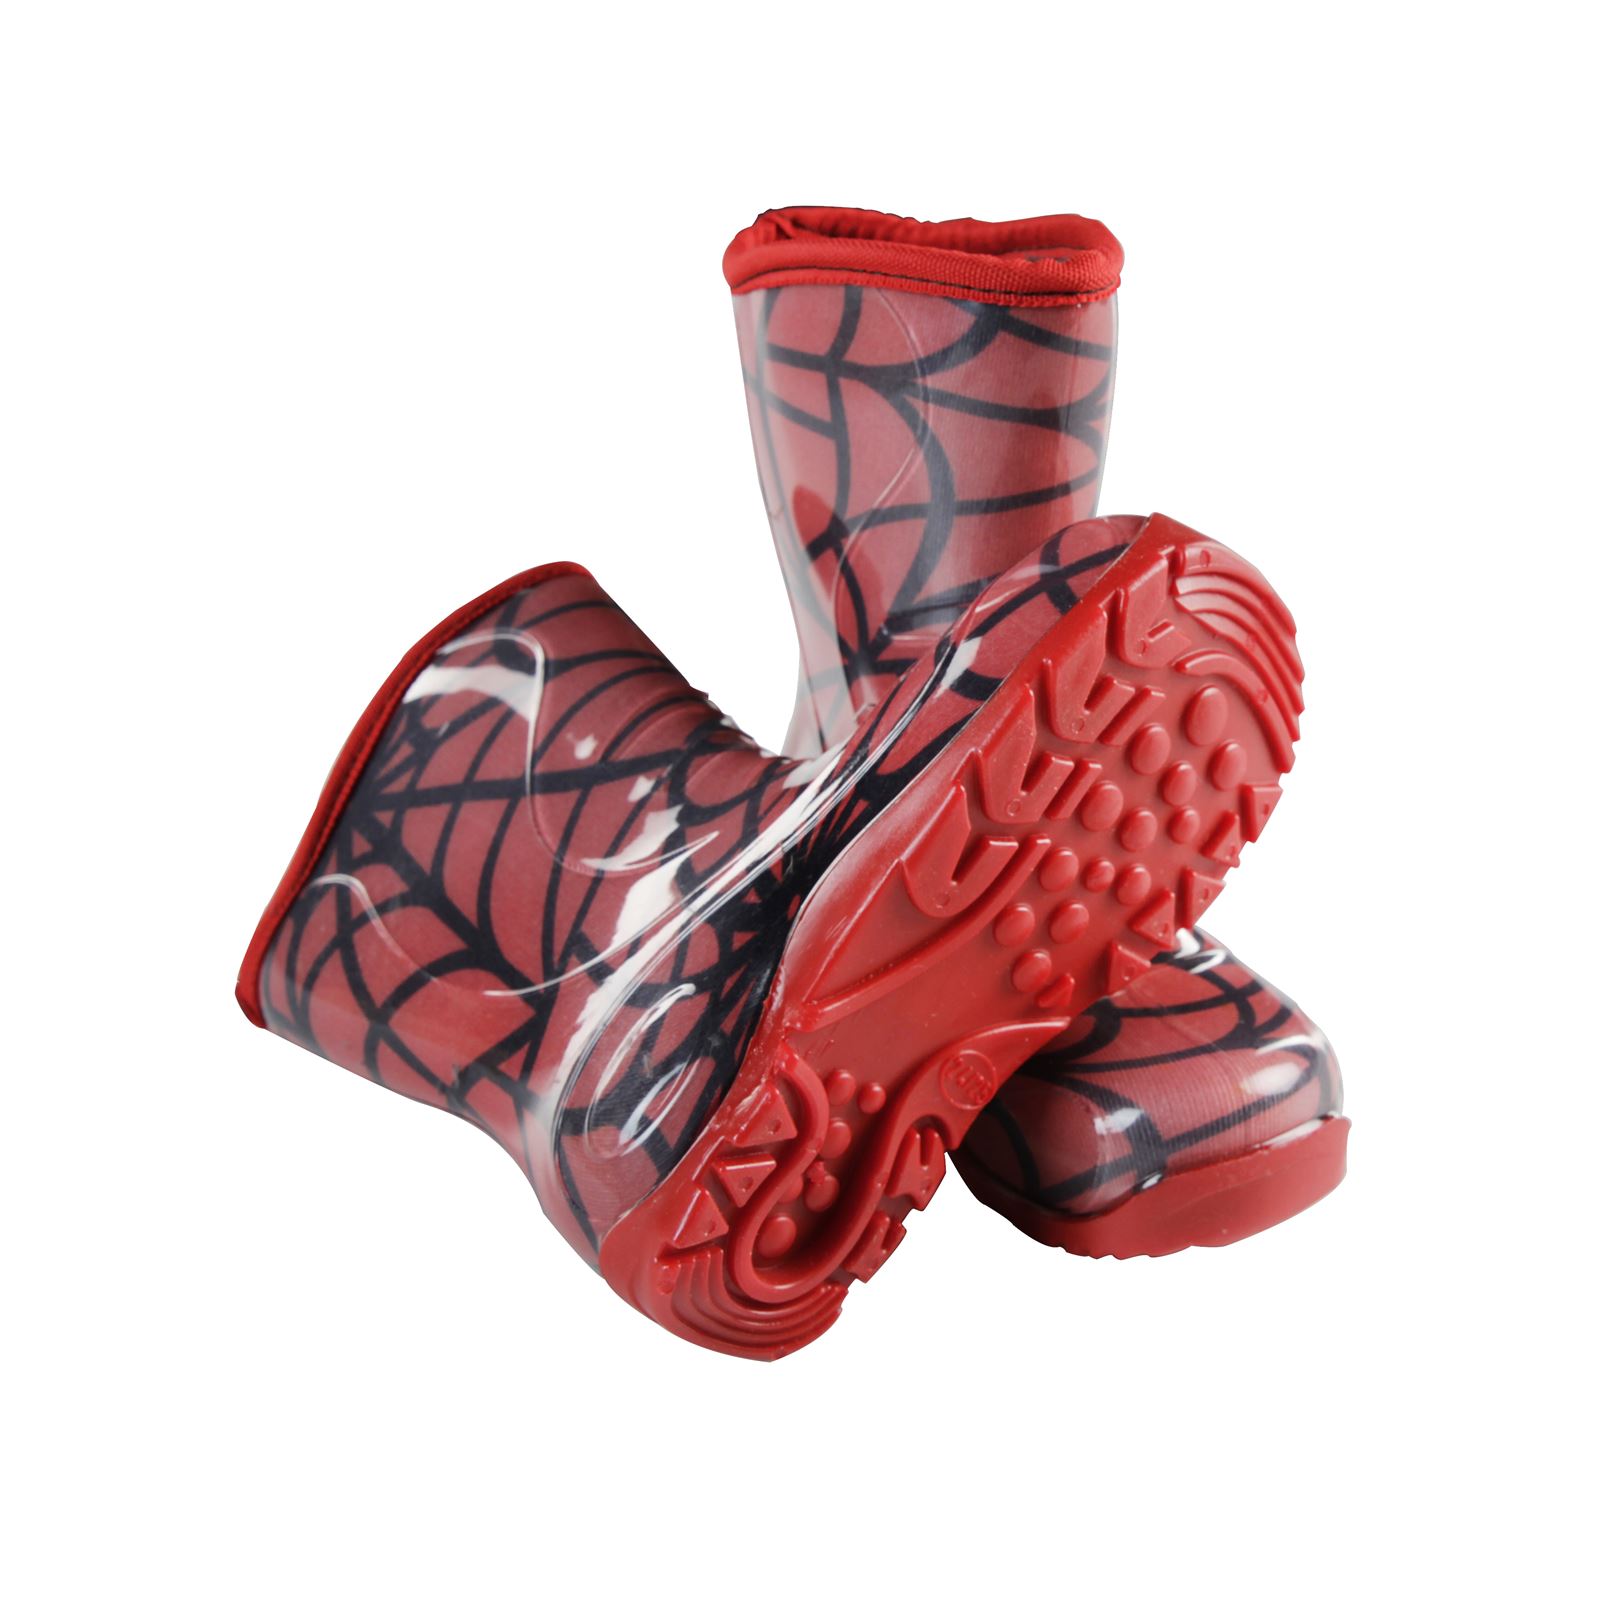 Boots Erkek Çocuk Ağ Desenli Yağmur Çizmesi 24-28 Numara Kırmızı